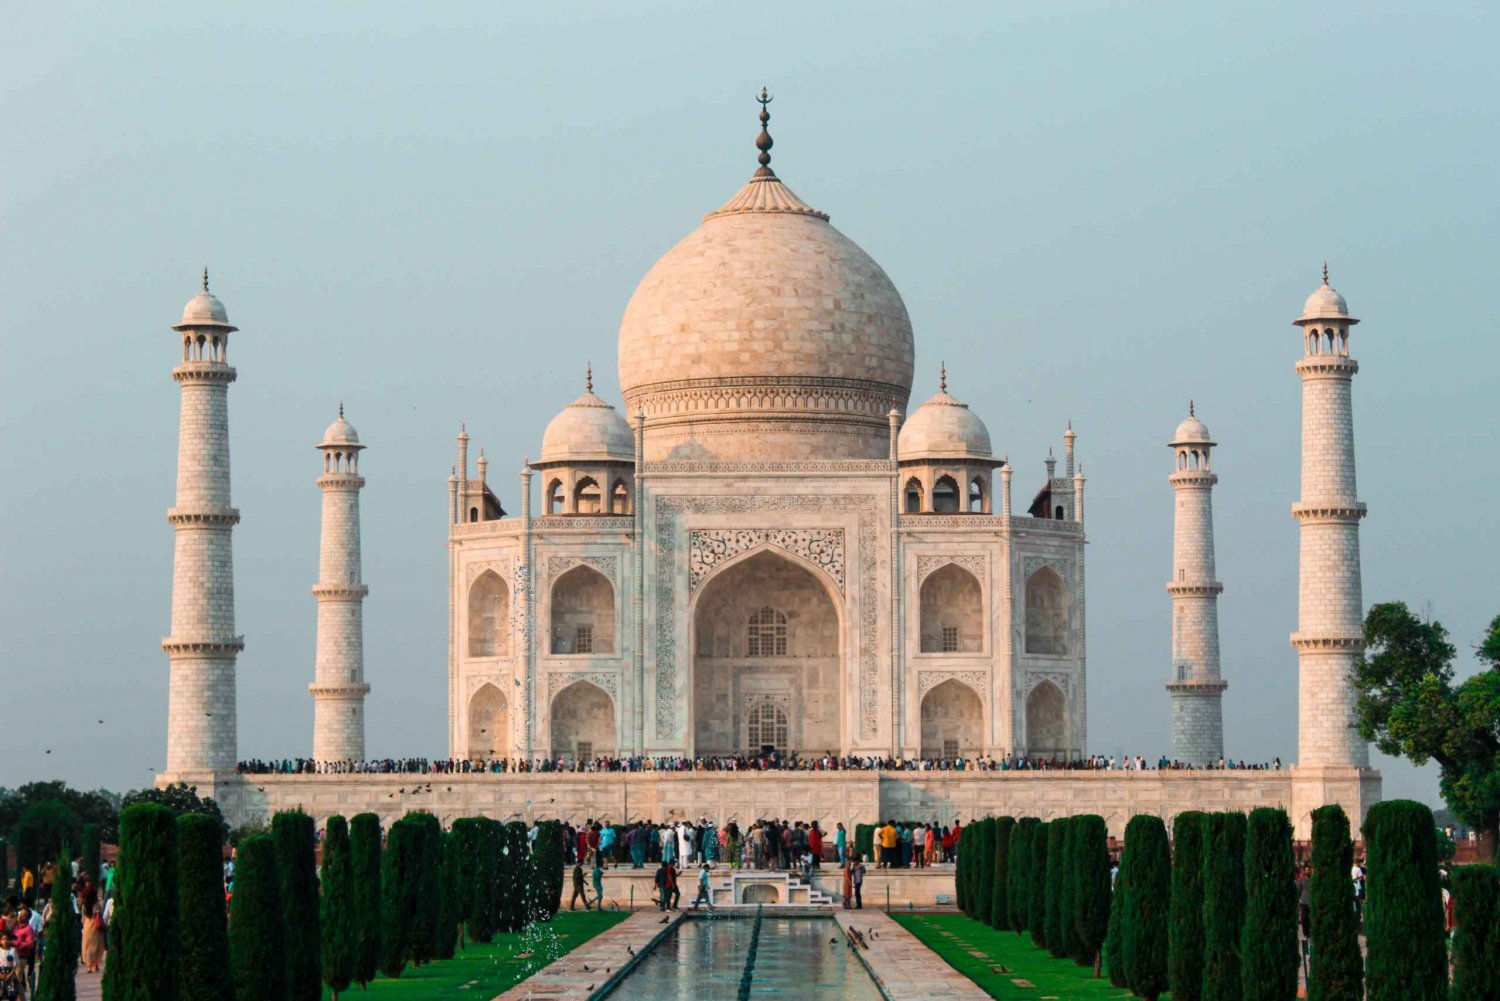 Excursão de 2 dias com tudo incluído ao Taj Mahal e à cidade de Agra saindo de Mumbai